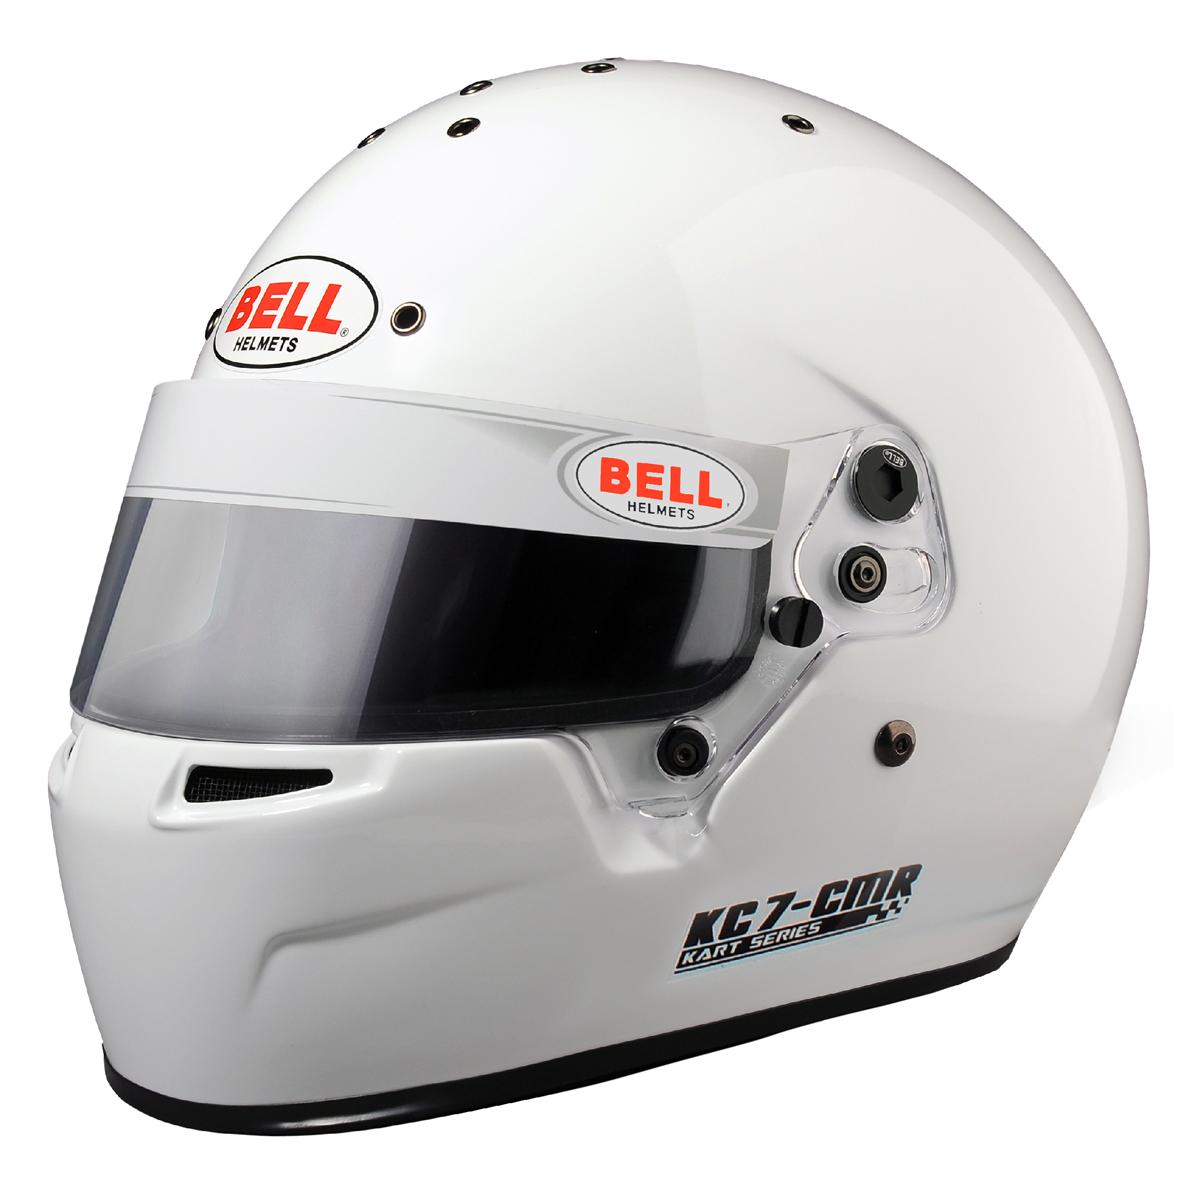 Bell KC7 CMR Full Face Kart Helmet